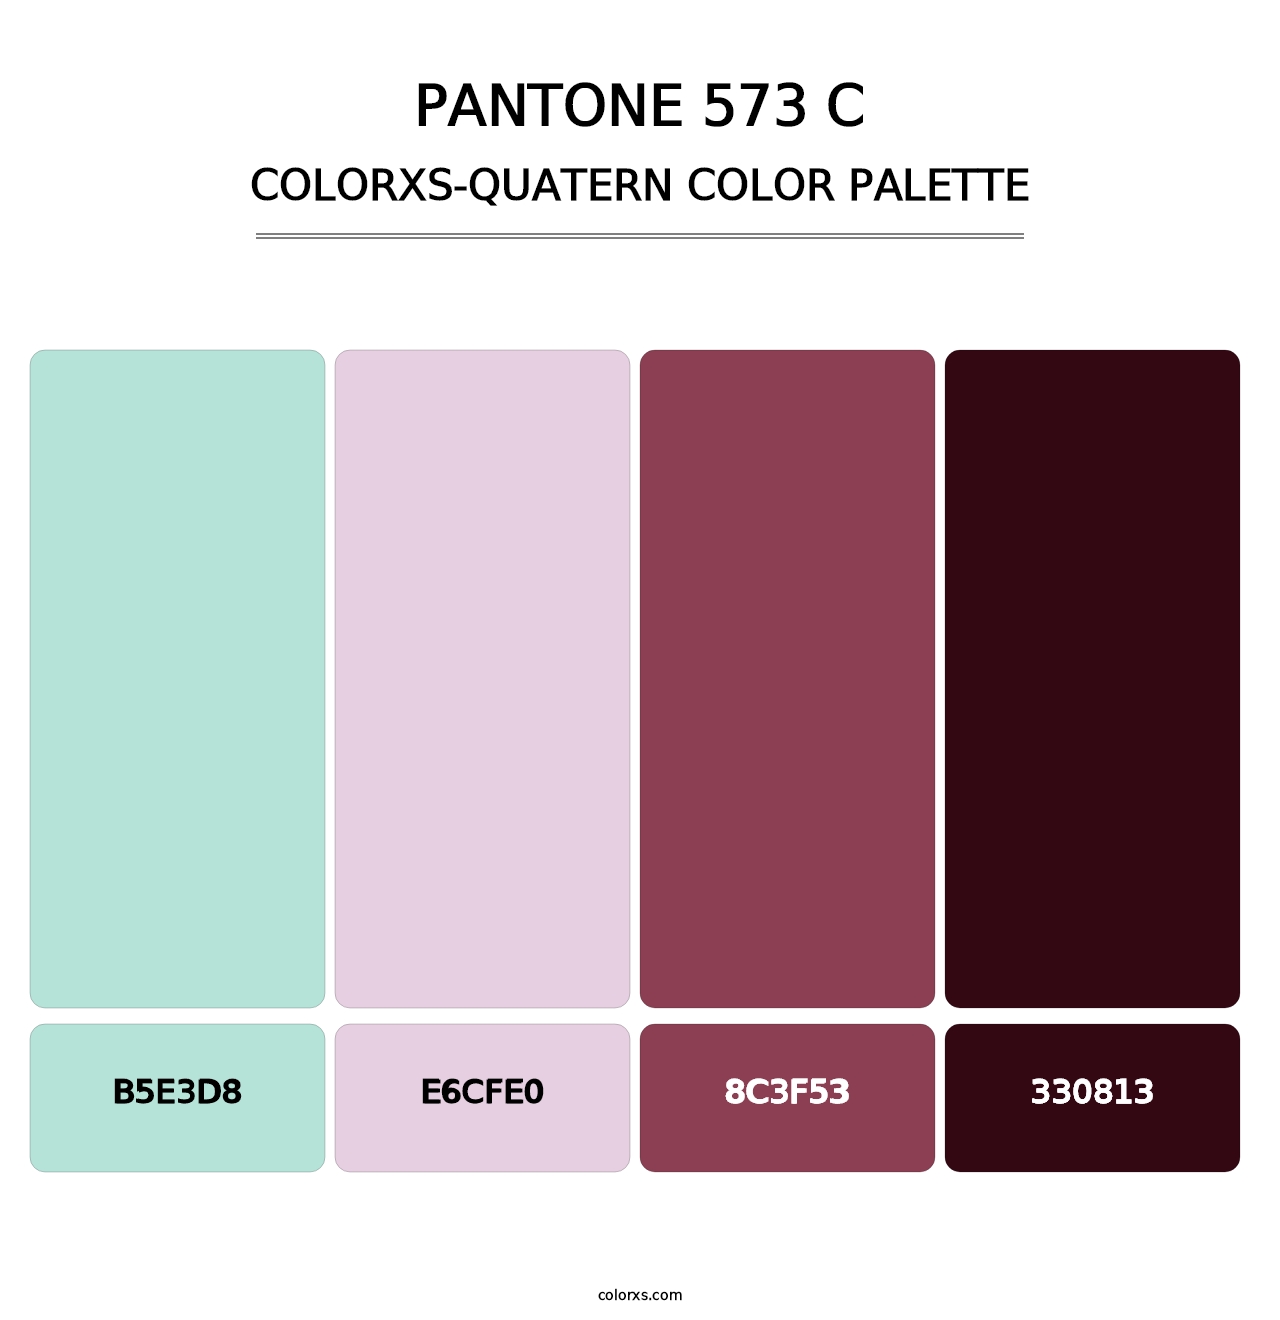 PANTONE 573 C - Colorxs Quatern Palette